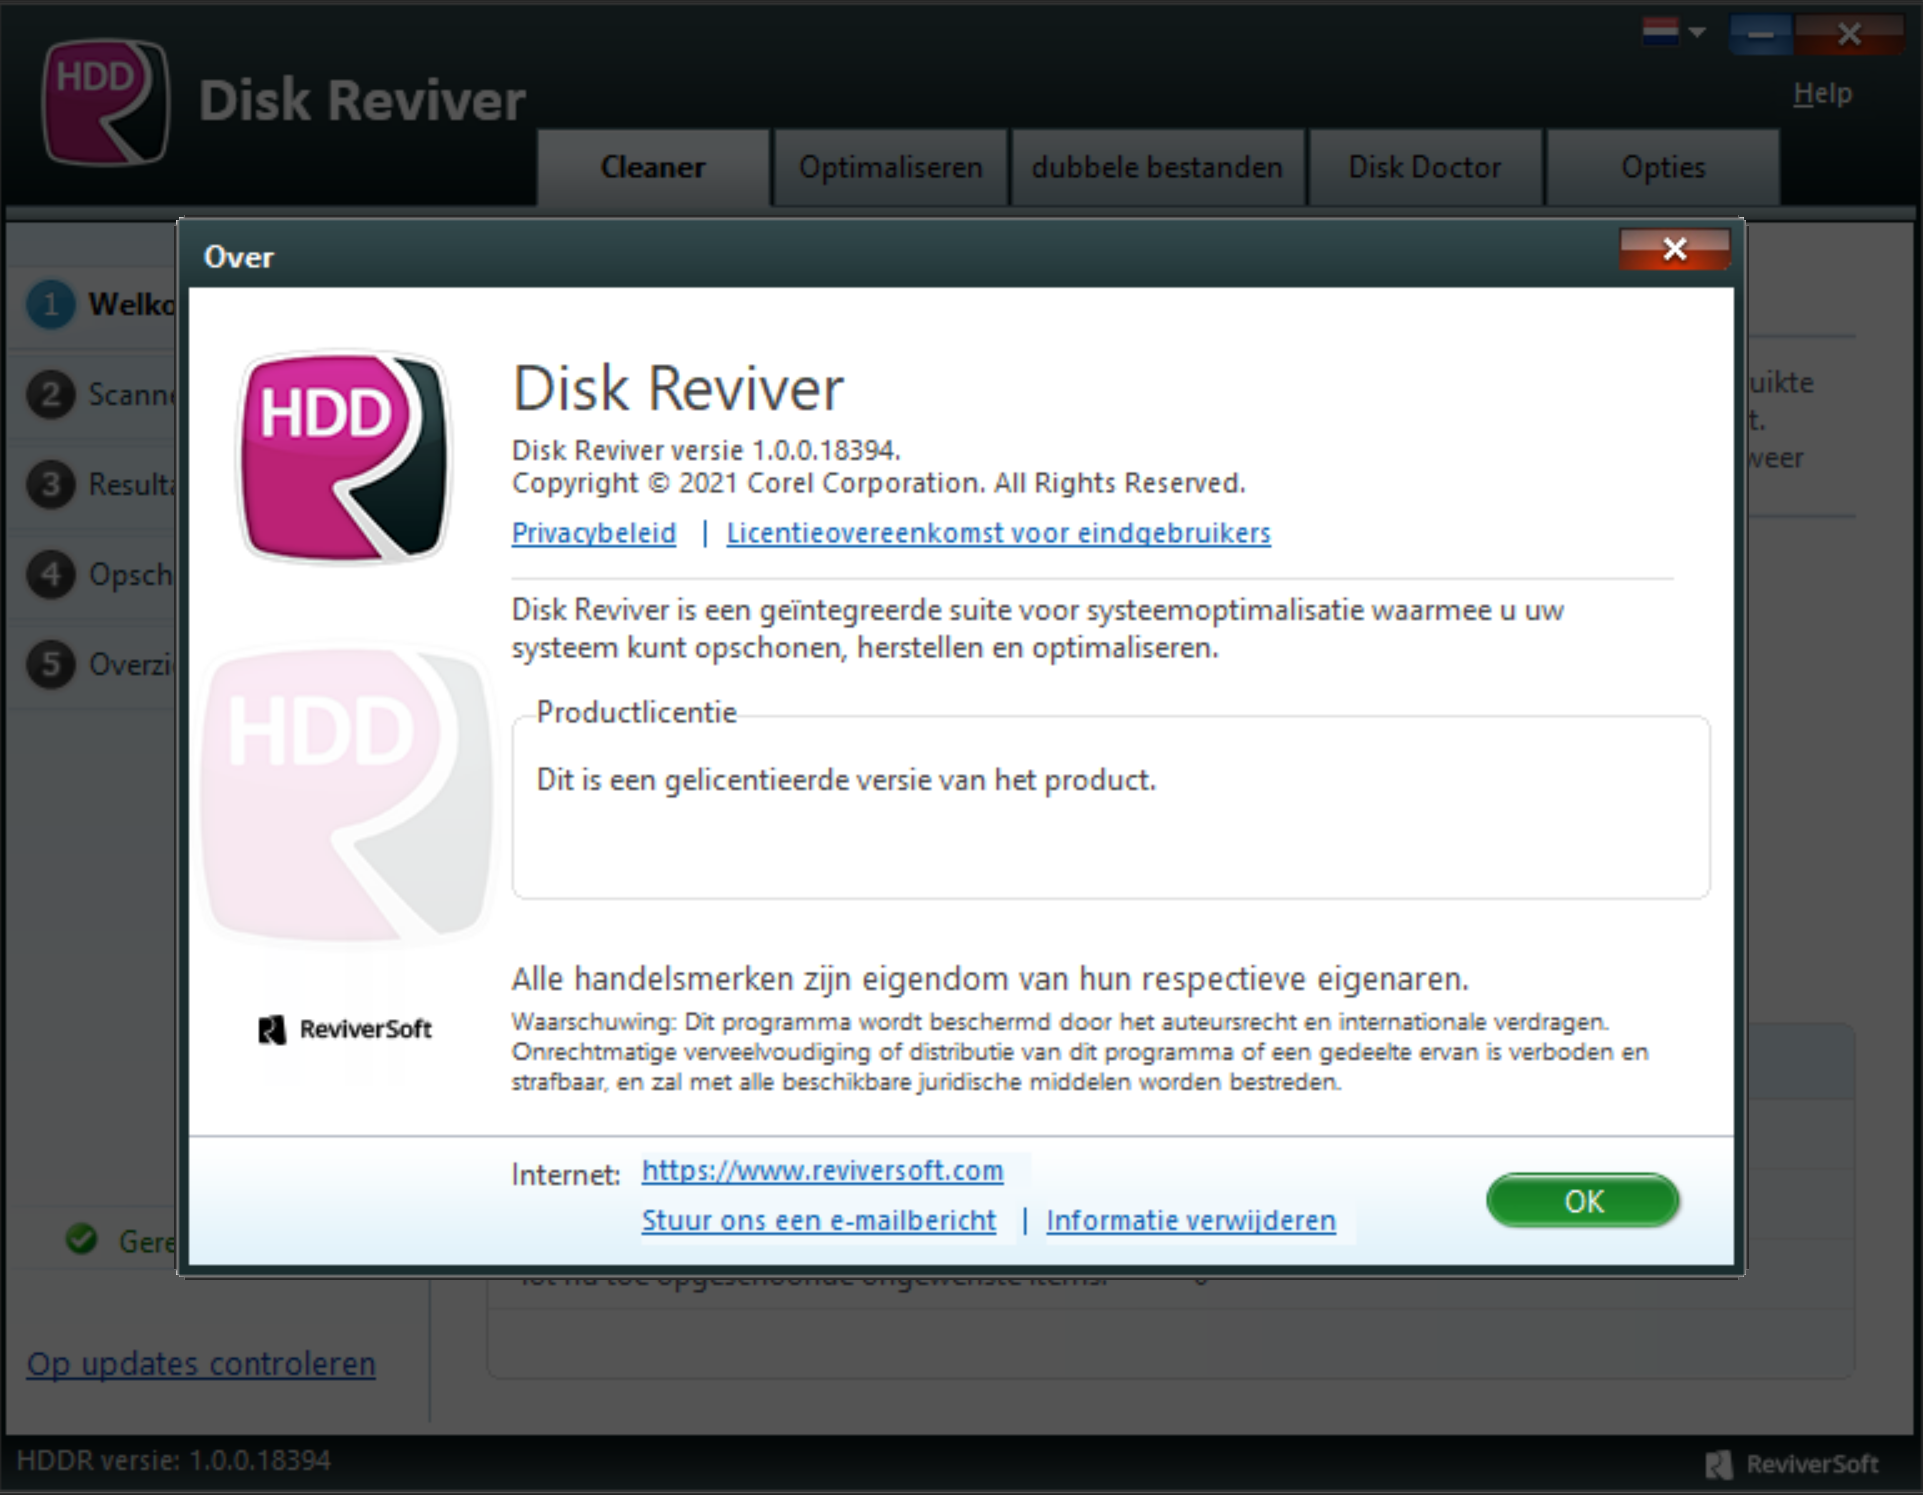 ReviverSoft Disk Reviver 1.0.0.18394 Nederlands ( Fixed Crack !)